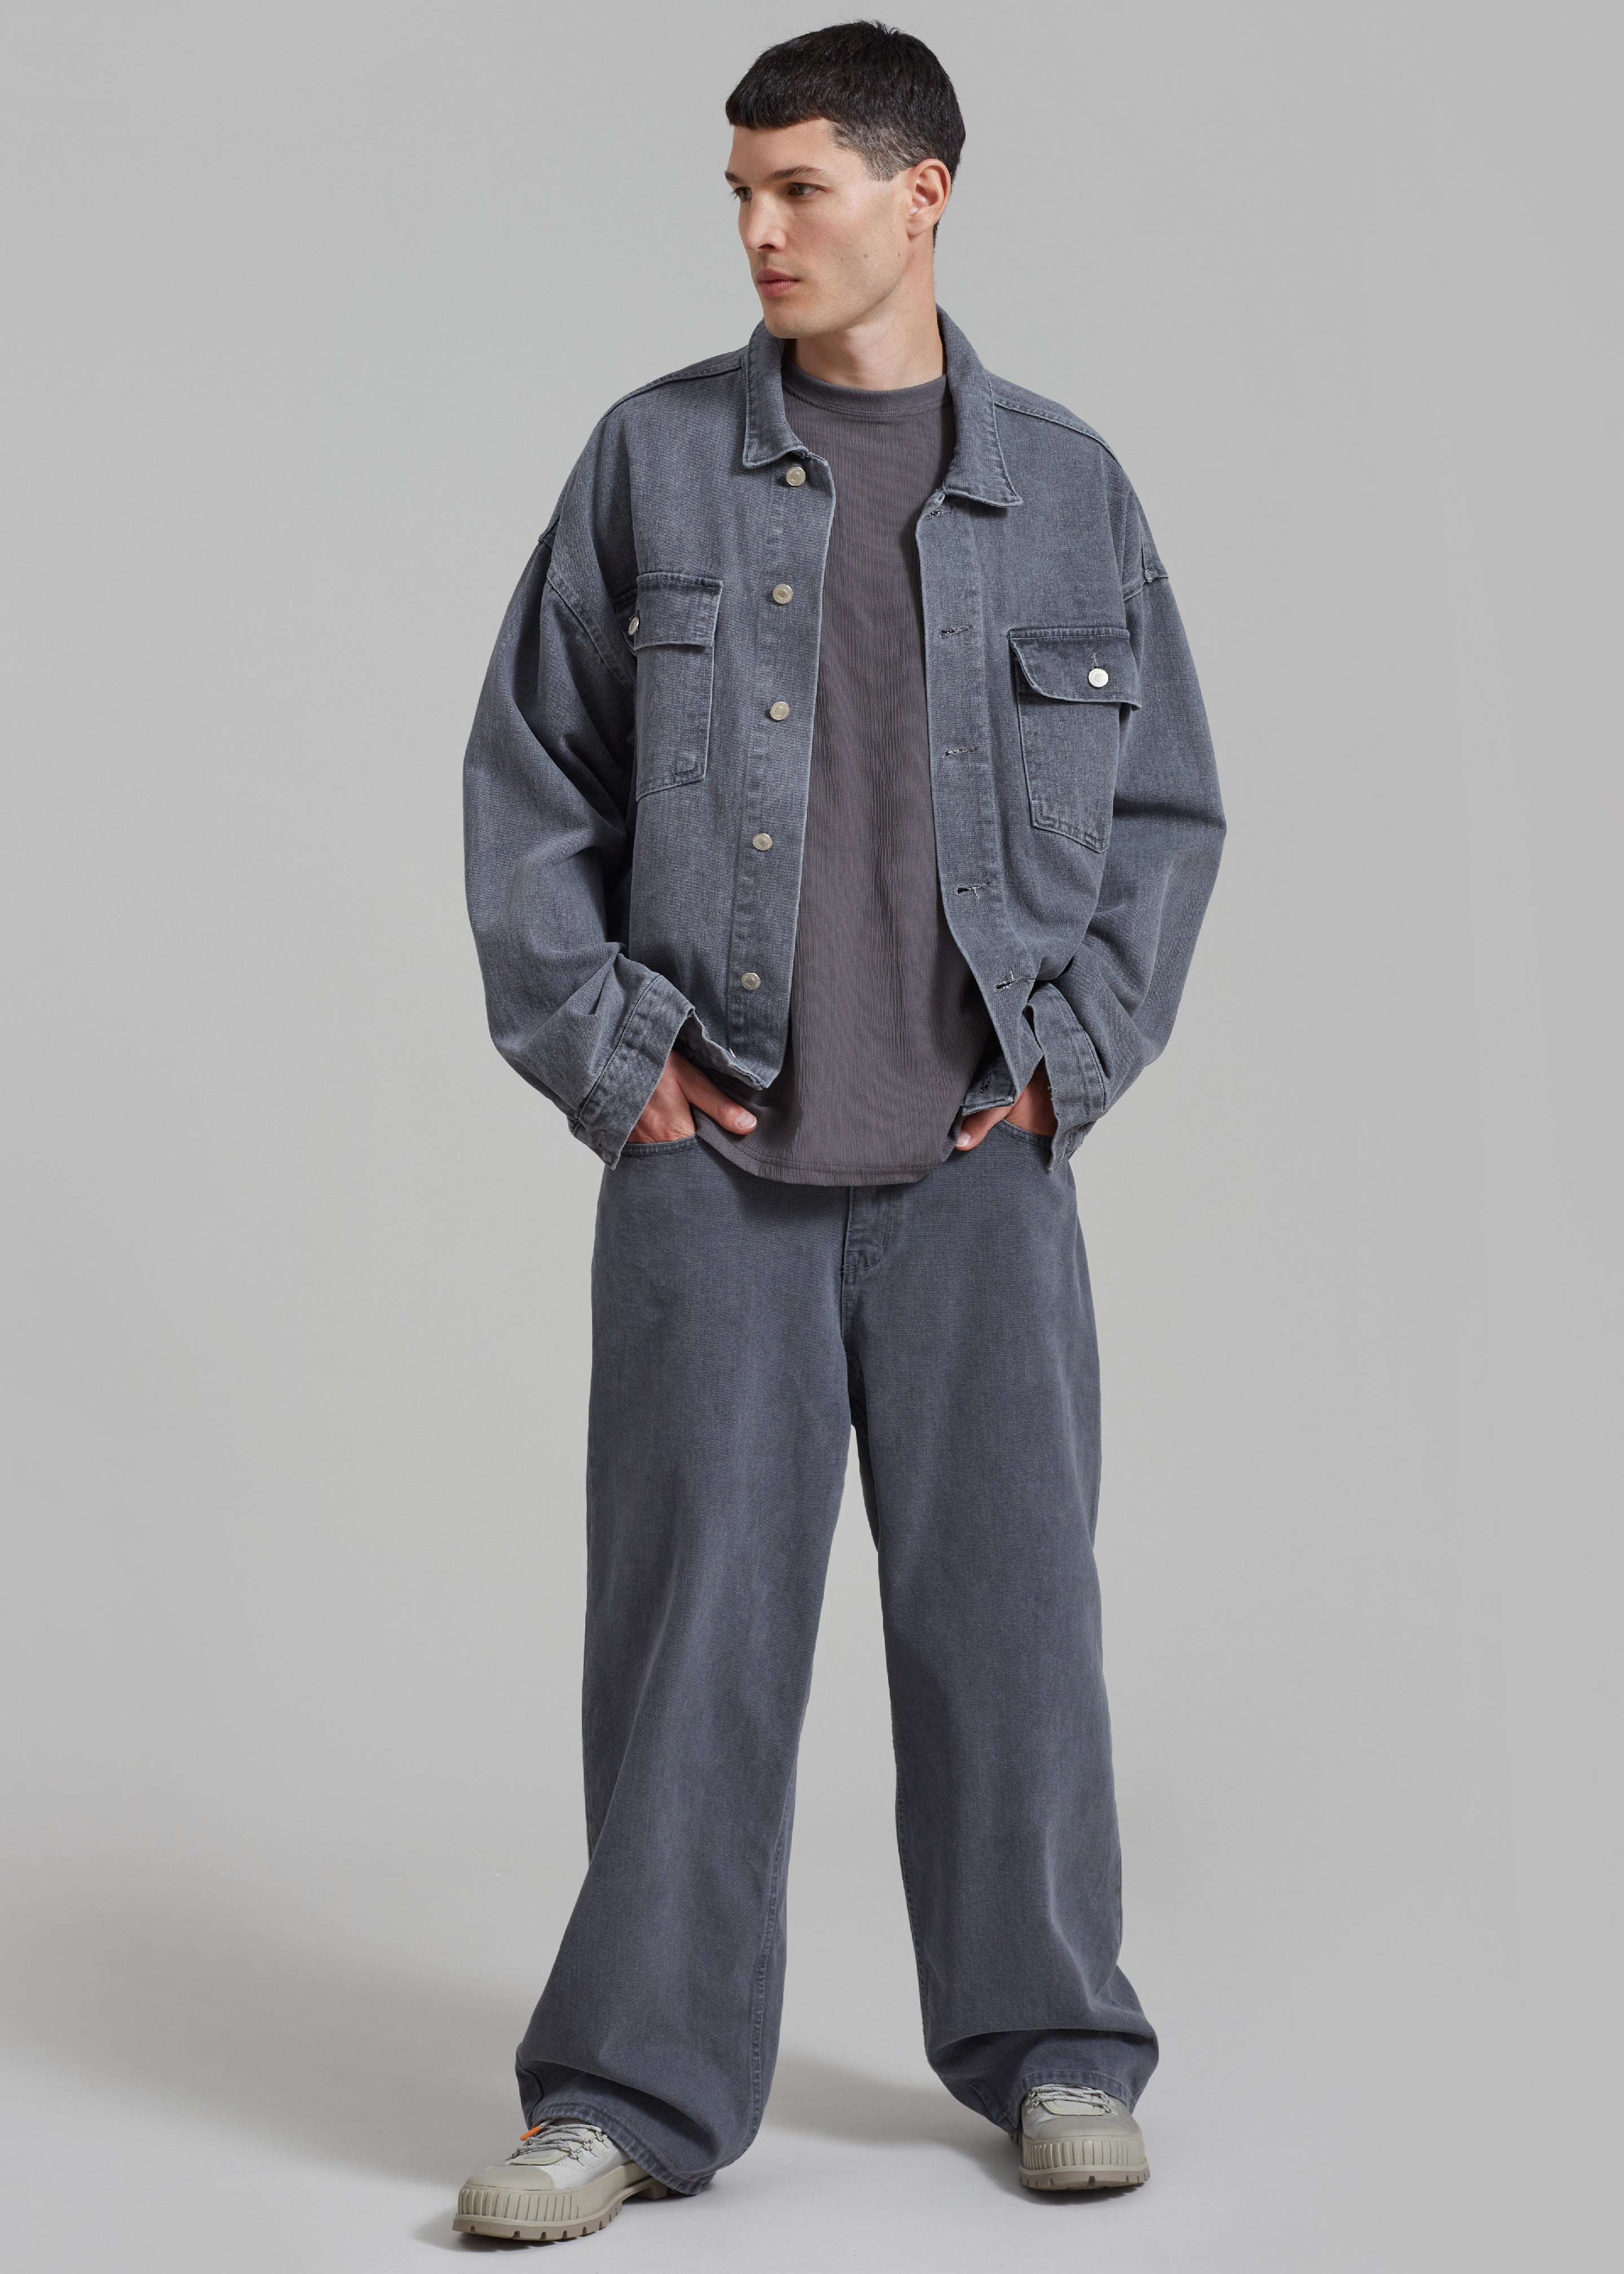 Connor Oversized Denim Jacket - Grey Wash - 5